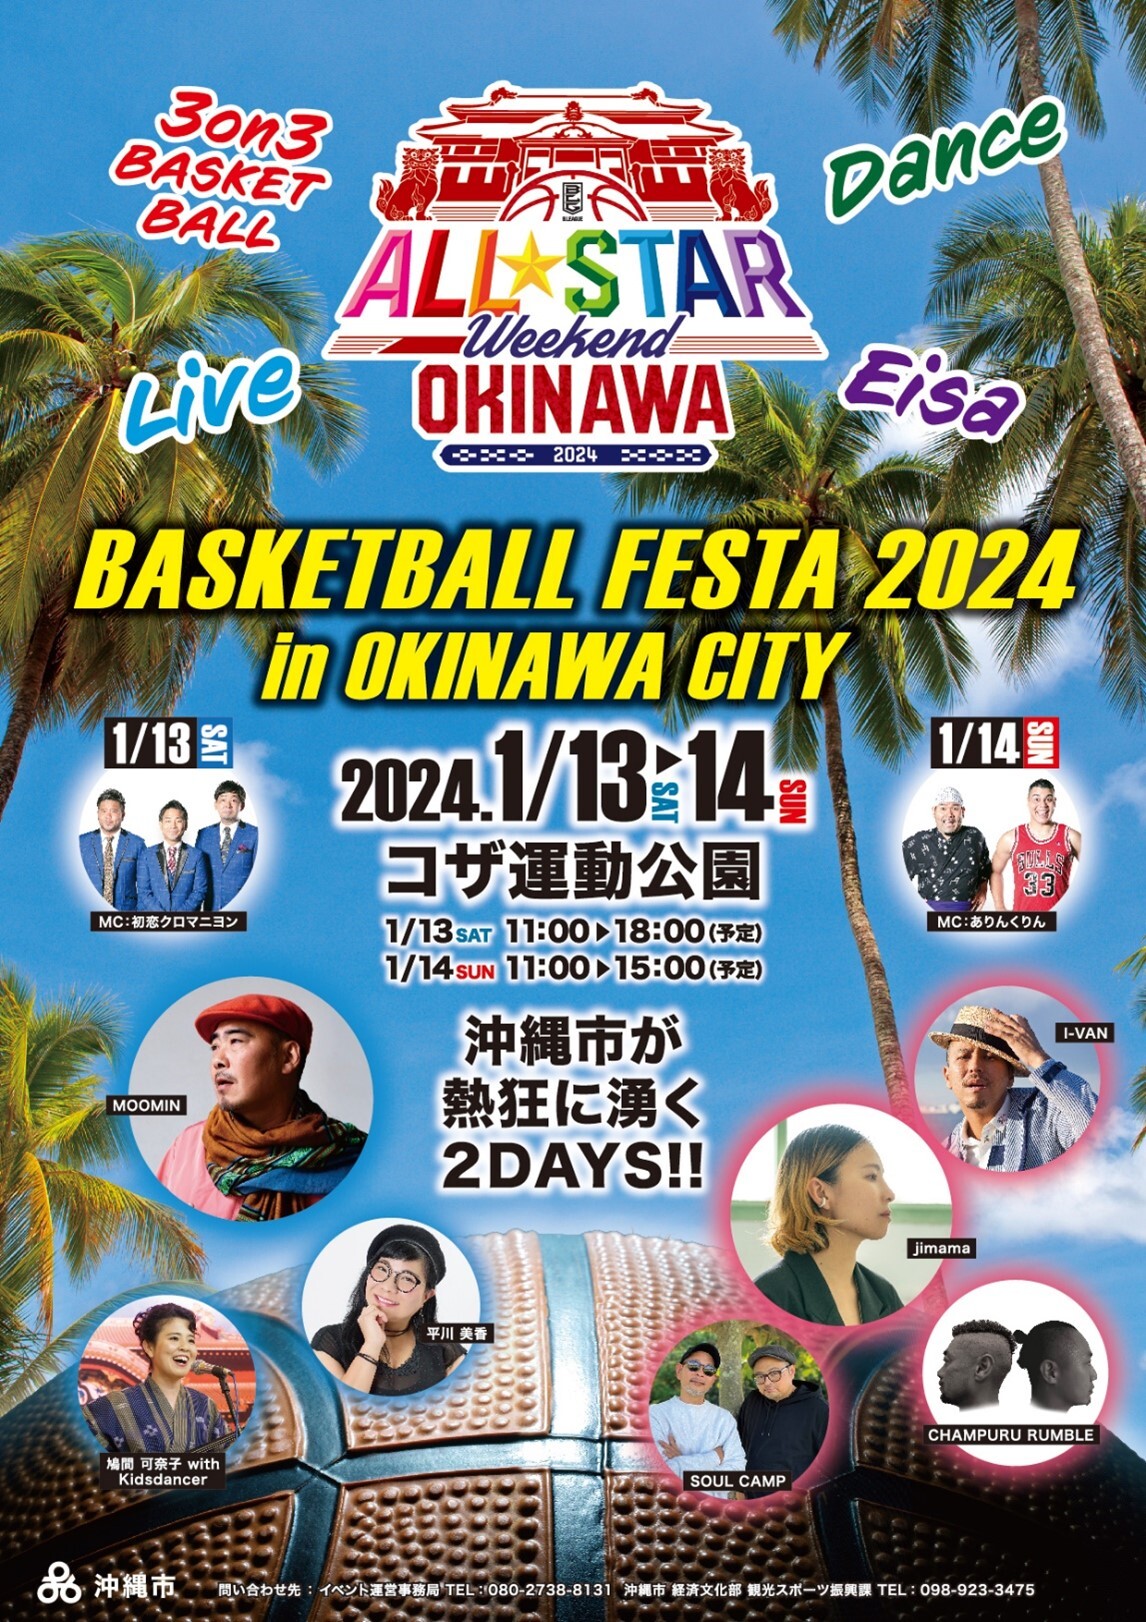 沖縄市が熱狂に沸く2DAYS！
「BASKETBALL FESTA 2024 in OKINAWA CITY」
1月13日(土)・14日(日)開催